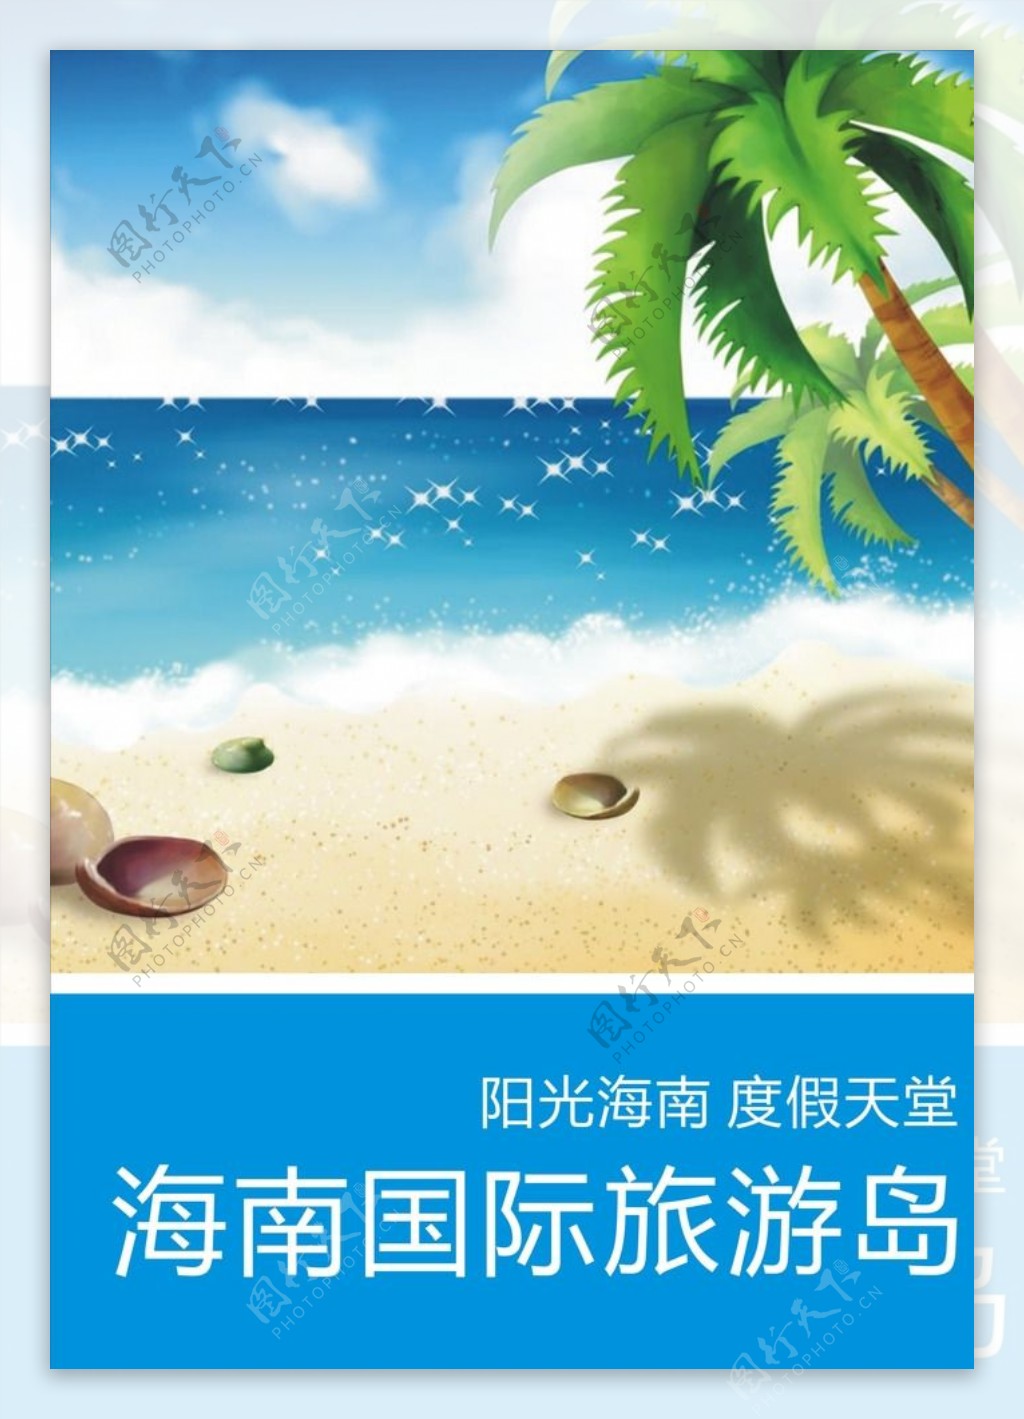 海南旅游宣传海报图片